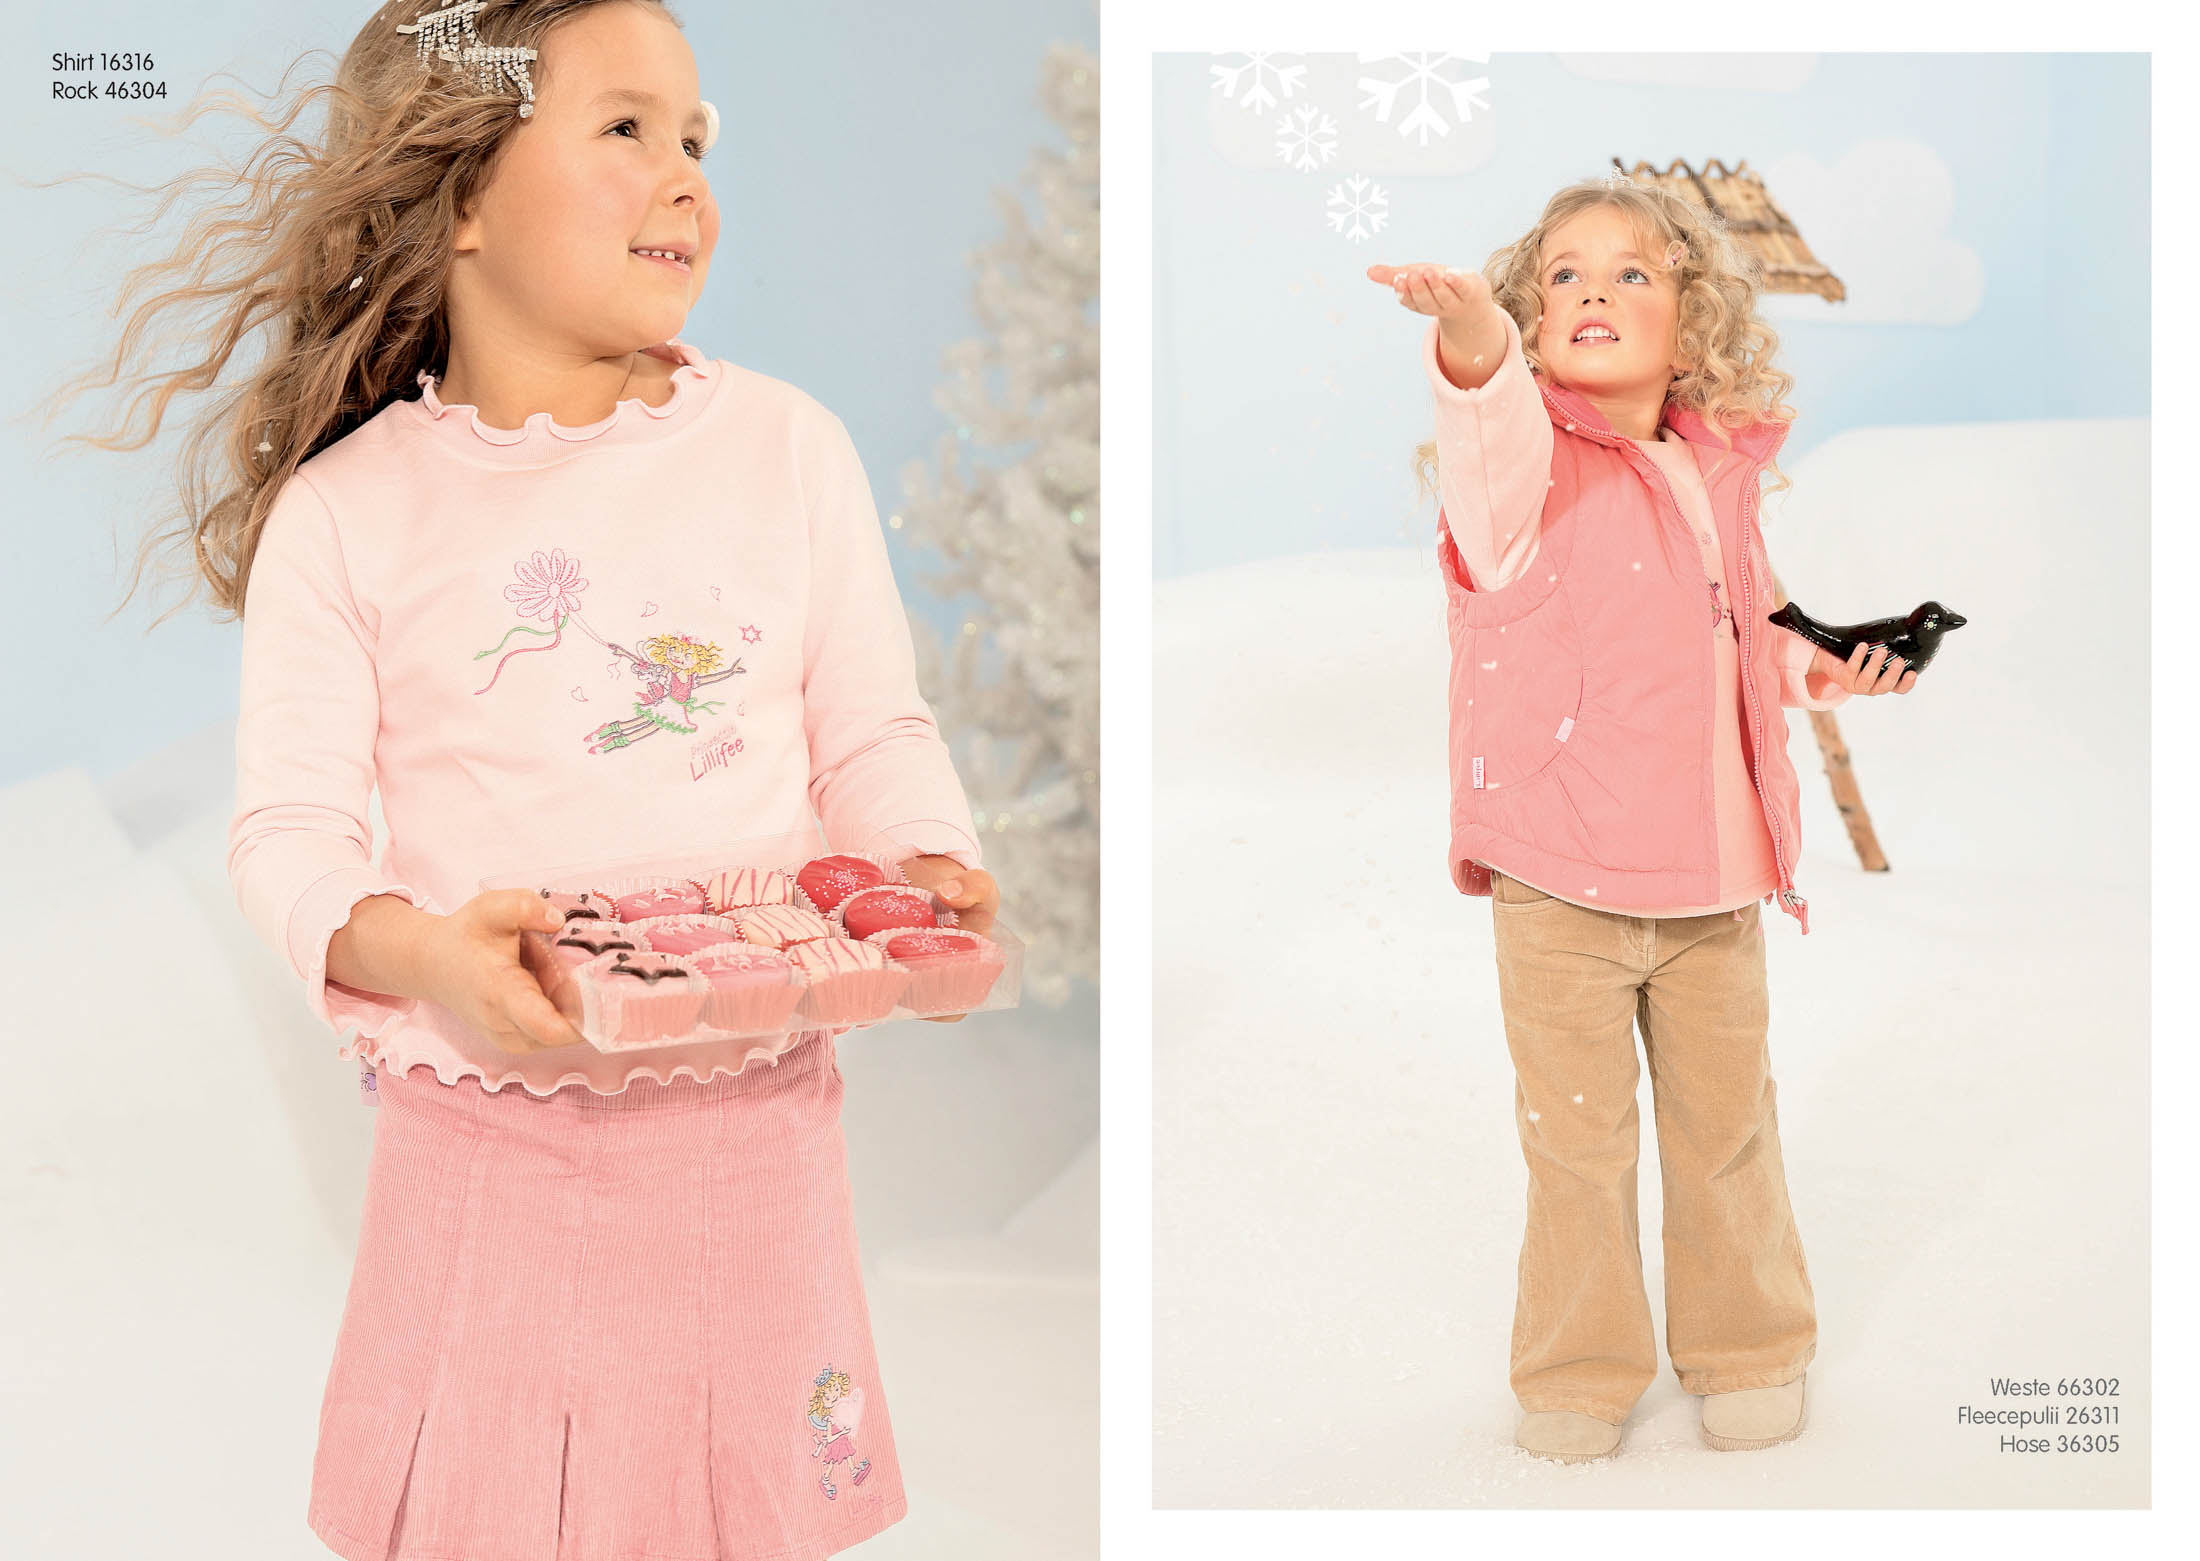 Zwei Bilder eines jungen Mädchens vor winterlicher Kulisse. Links: Mädchen im rosa Outfit hält Macarons. Rechts: Mädchen in beigem und rosa Outfit greift nach einer Schneeflocke, in der Nähe steht ein Spielzeugpferd. © Fotografie Tomas Rodriguez